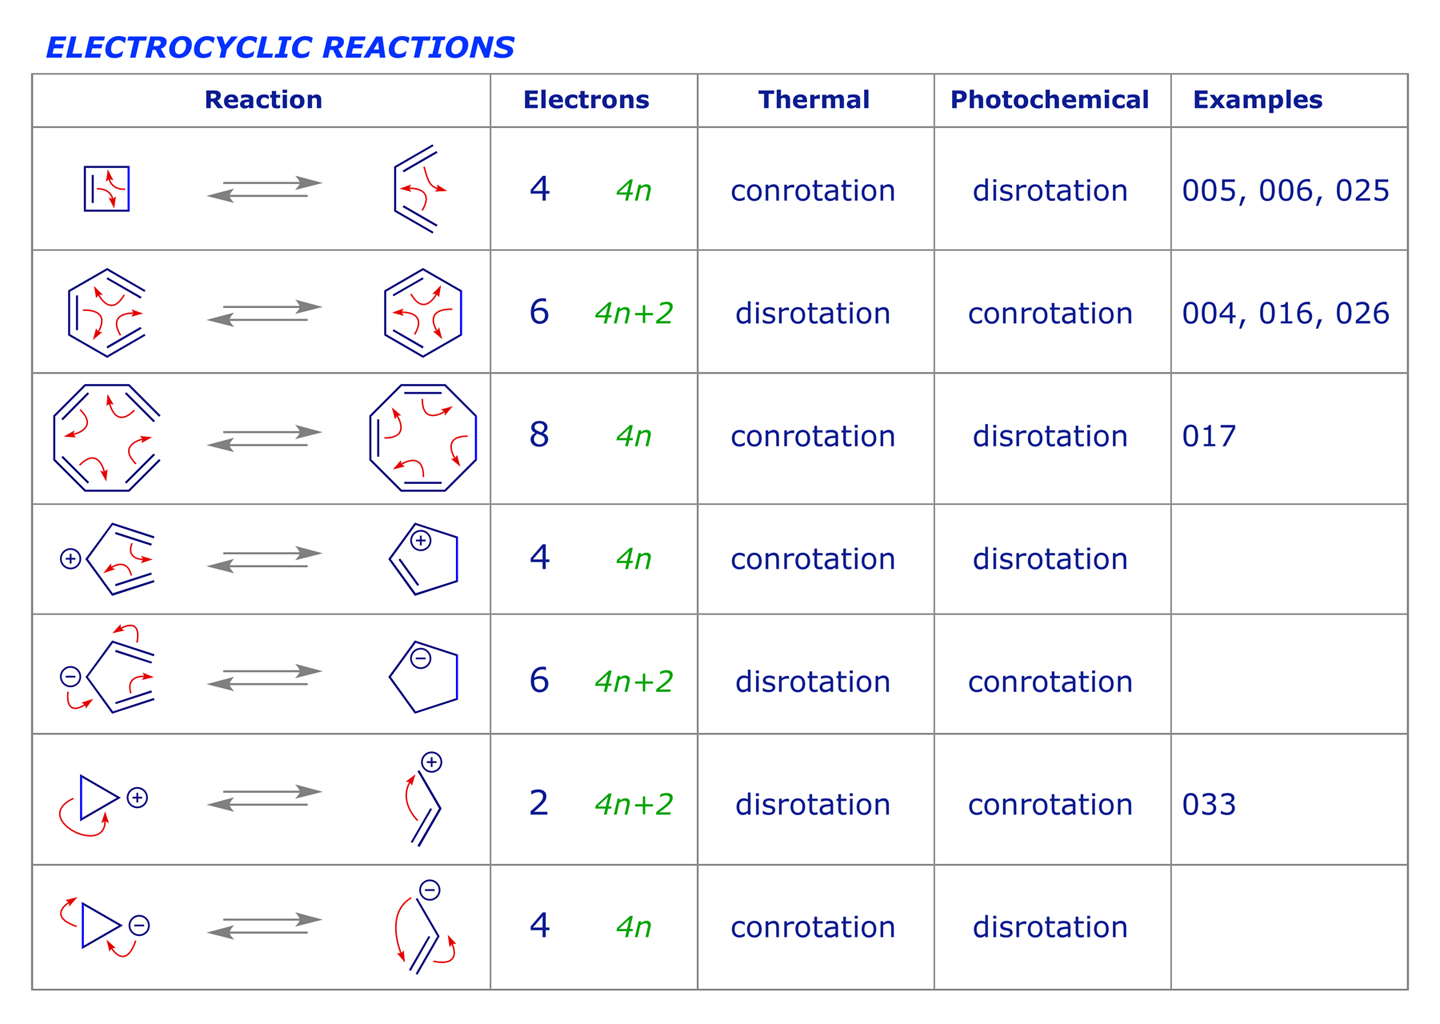 Electrocyclic Reactions